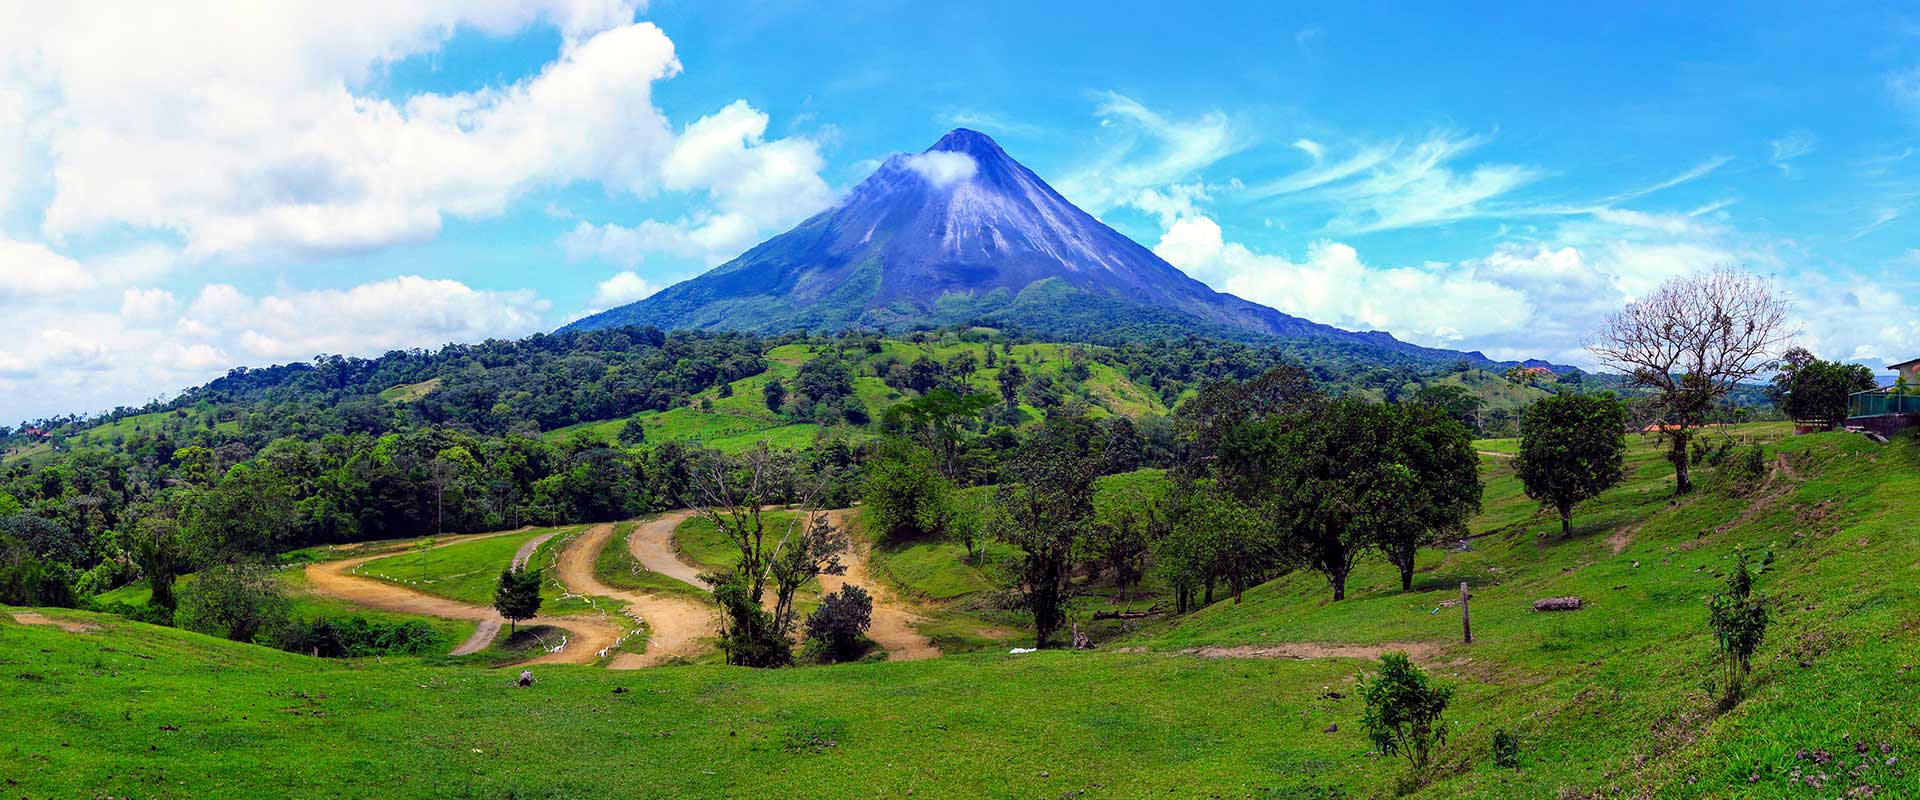 CR Rundreise Höhepunkte Costa Ricas 7 Tage Slider 1